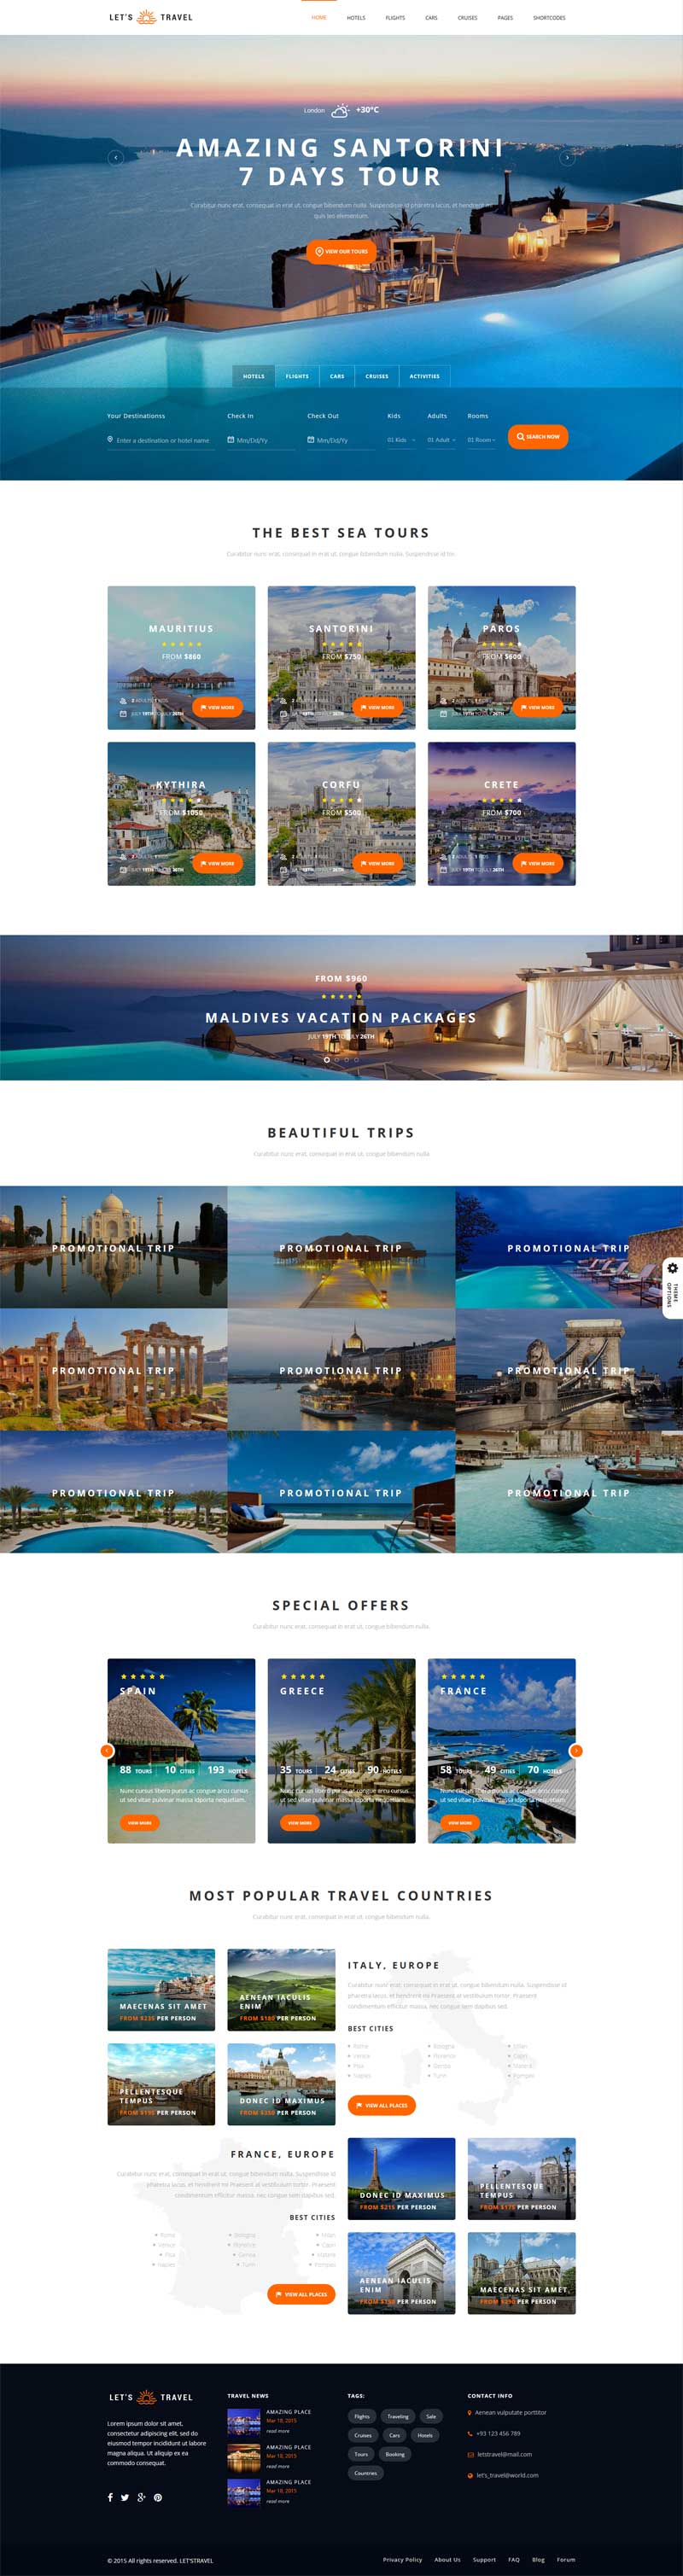 大气响应式的旅游酒店在线预订网站模板